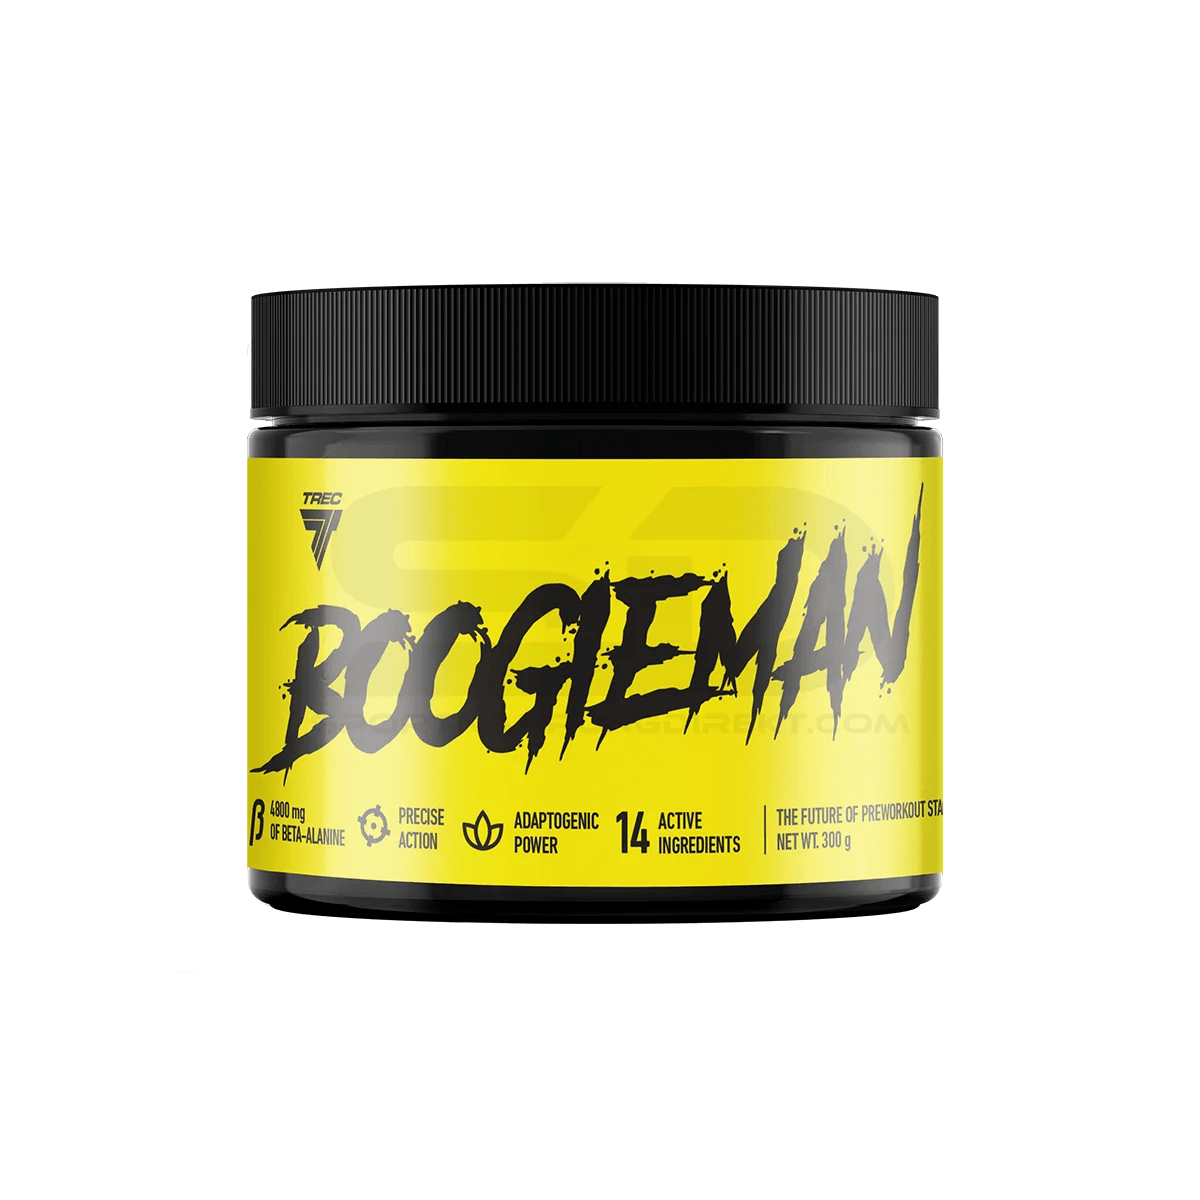 TREC BOOGIEMAN Booster 300g - Supplement Support